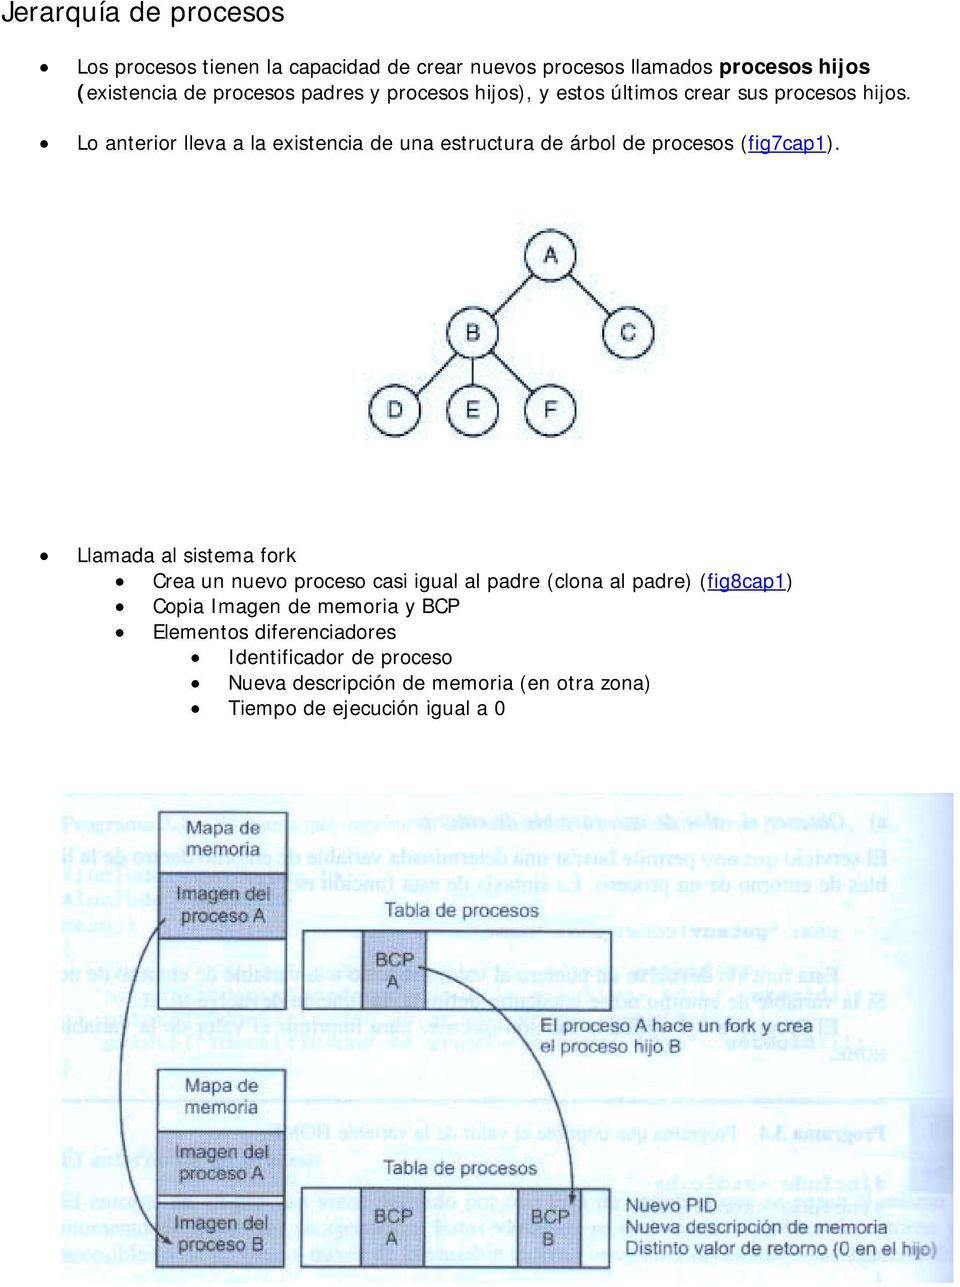 Lo anterior lleva a la existencia de una estructura de árbol de procesos (fig7cap1).